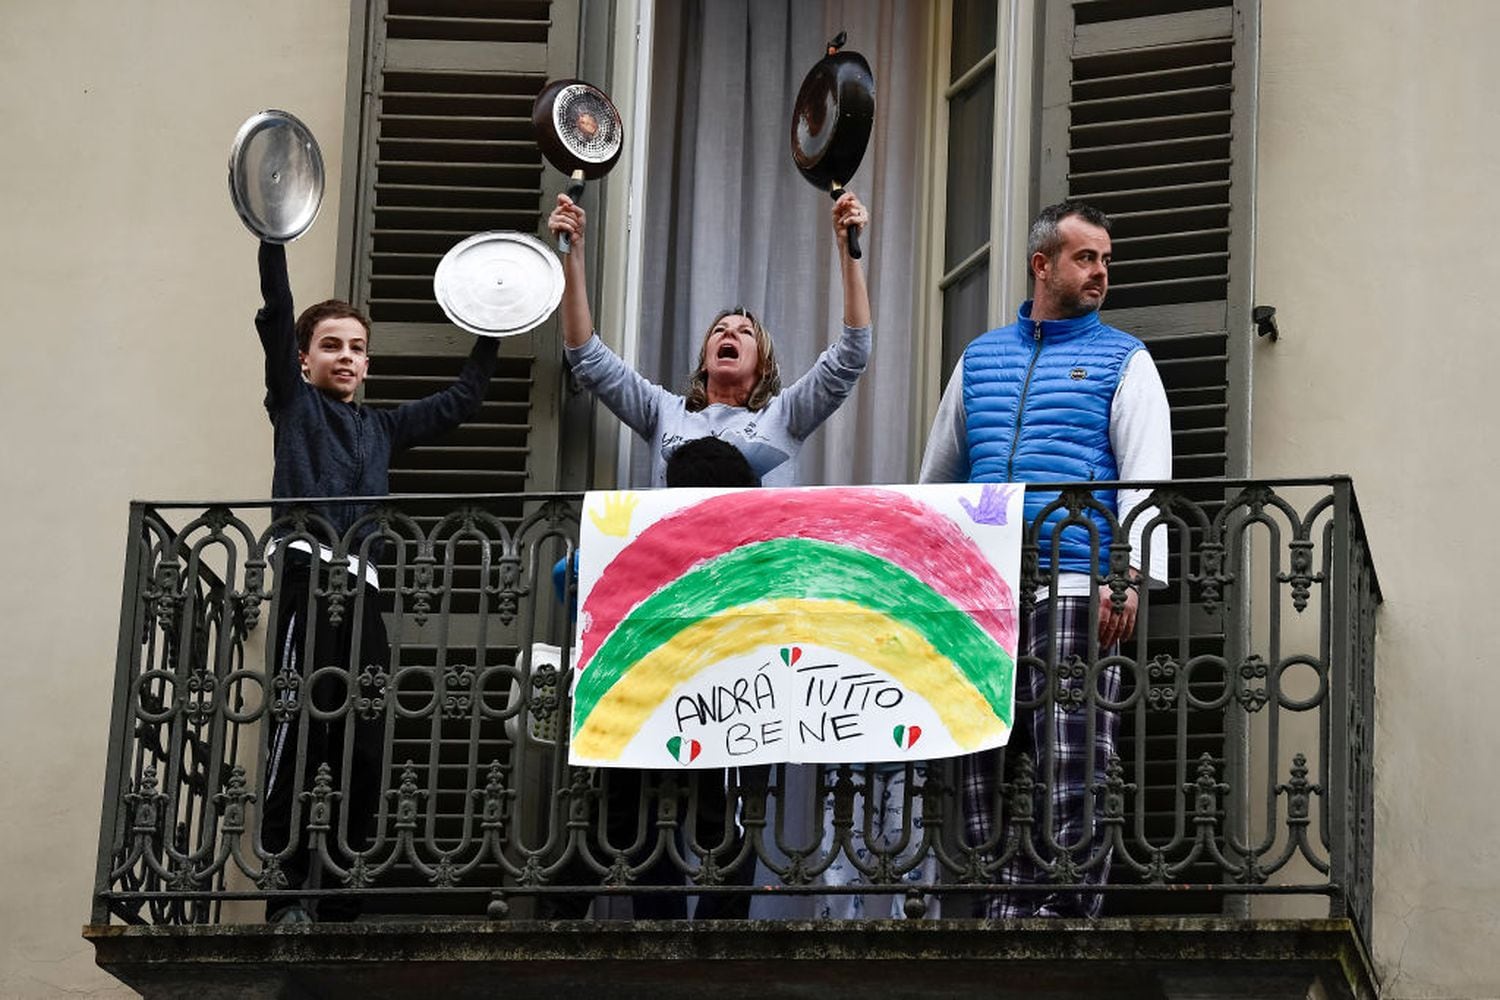 "Tudo ficará bem", diz um cartaz na varanda de um prédio de Torino ( Nicolò Campo/LightRocket via Getty Images).